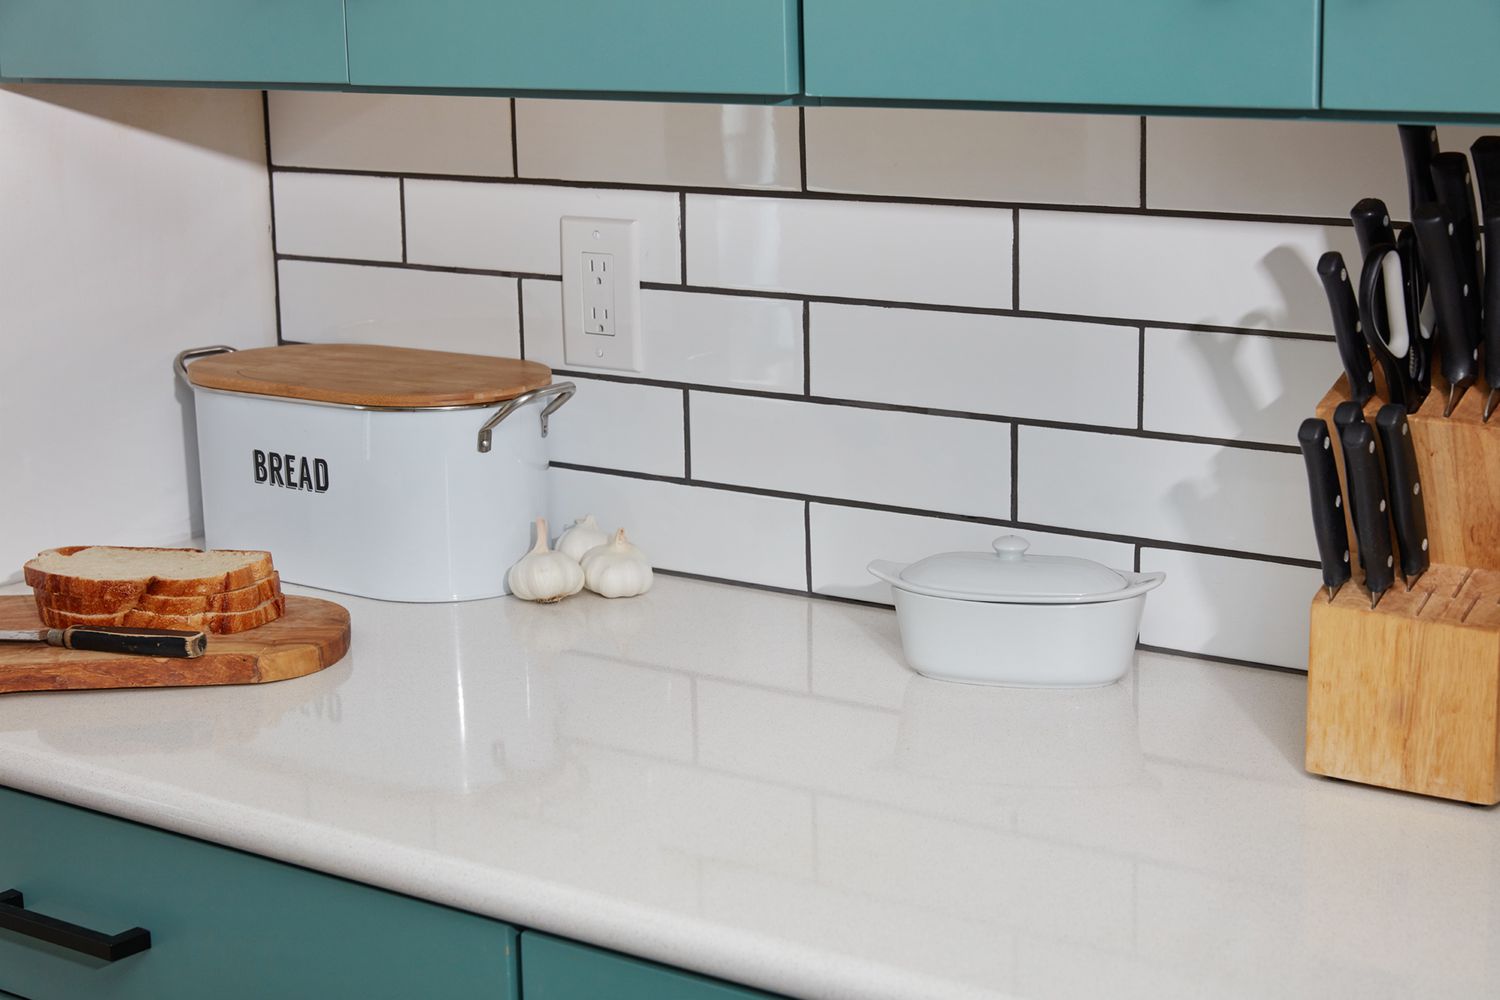 Azulejos brancos de cozinha usados como backsplash ao lado da caixa de pão, do recipiente de manteiga e das facas